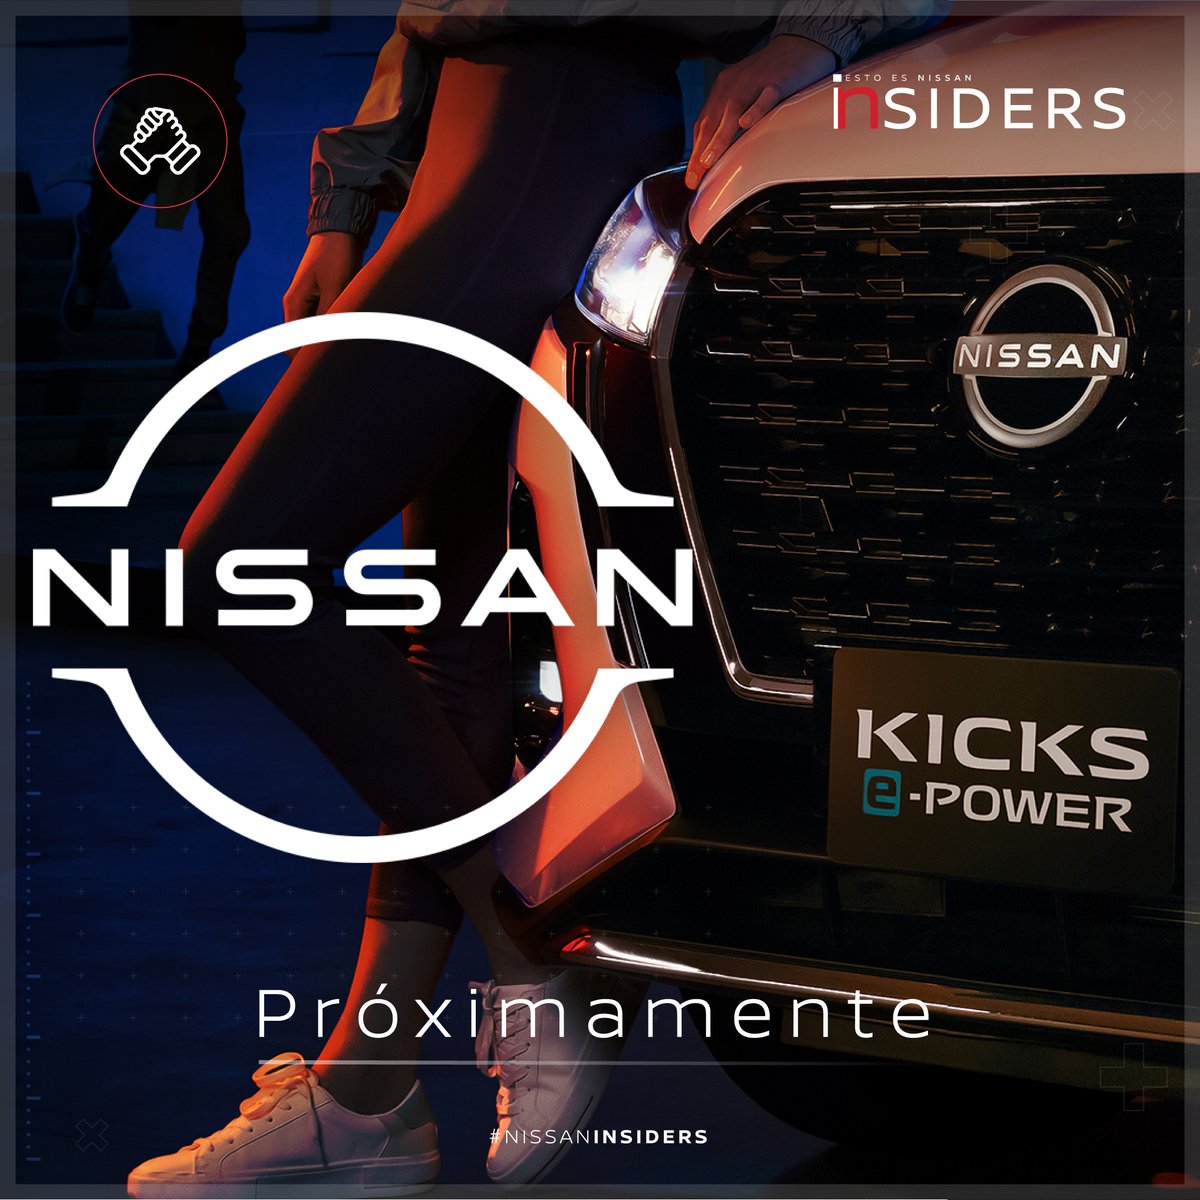 ¿Están listos para sentir toda la emoción de un nuevo modelo con tecnología exclusiva de #Nissan? ​
​
Este jueves 20 de octubre conoce el modelo que cambiará la movilidad en México😎⚡️
​
#NissanInsiders #NissanKICKSePOWER